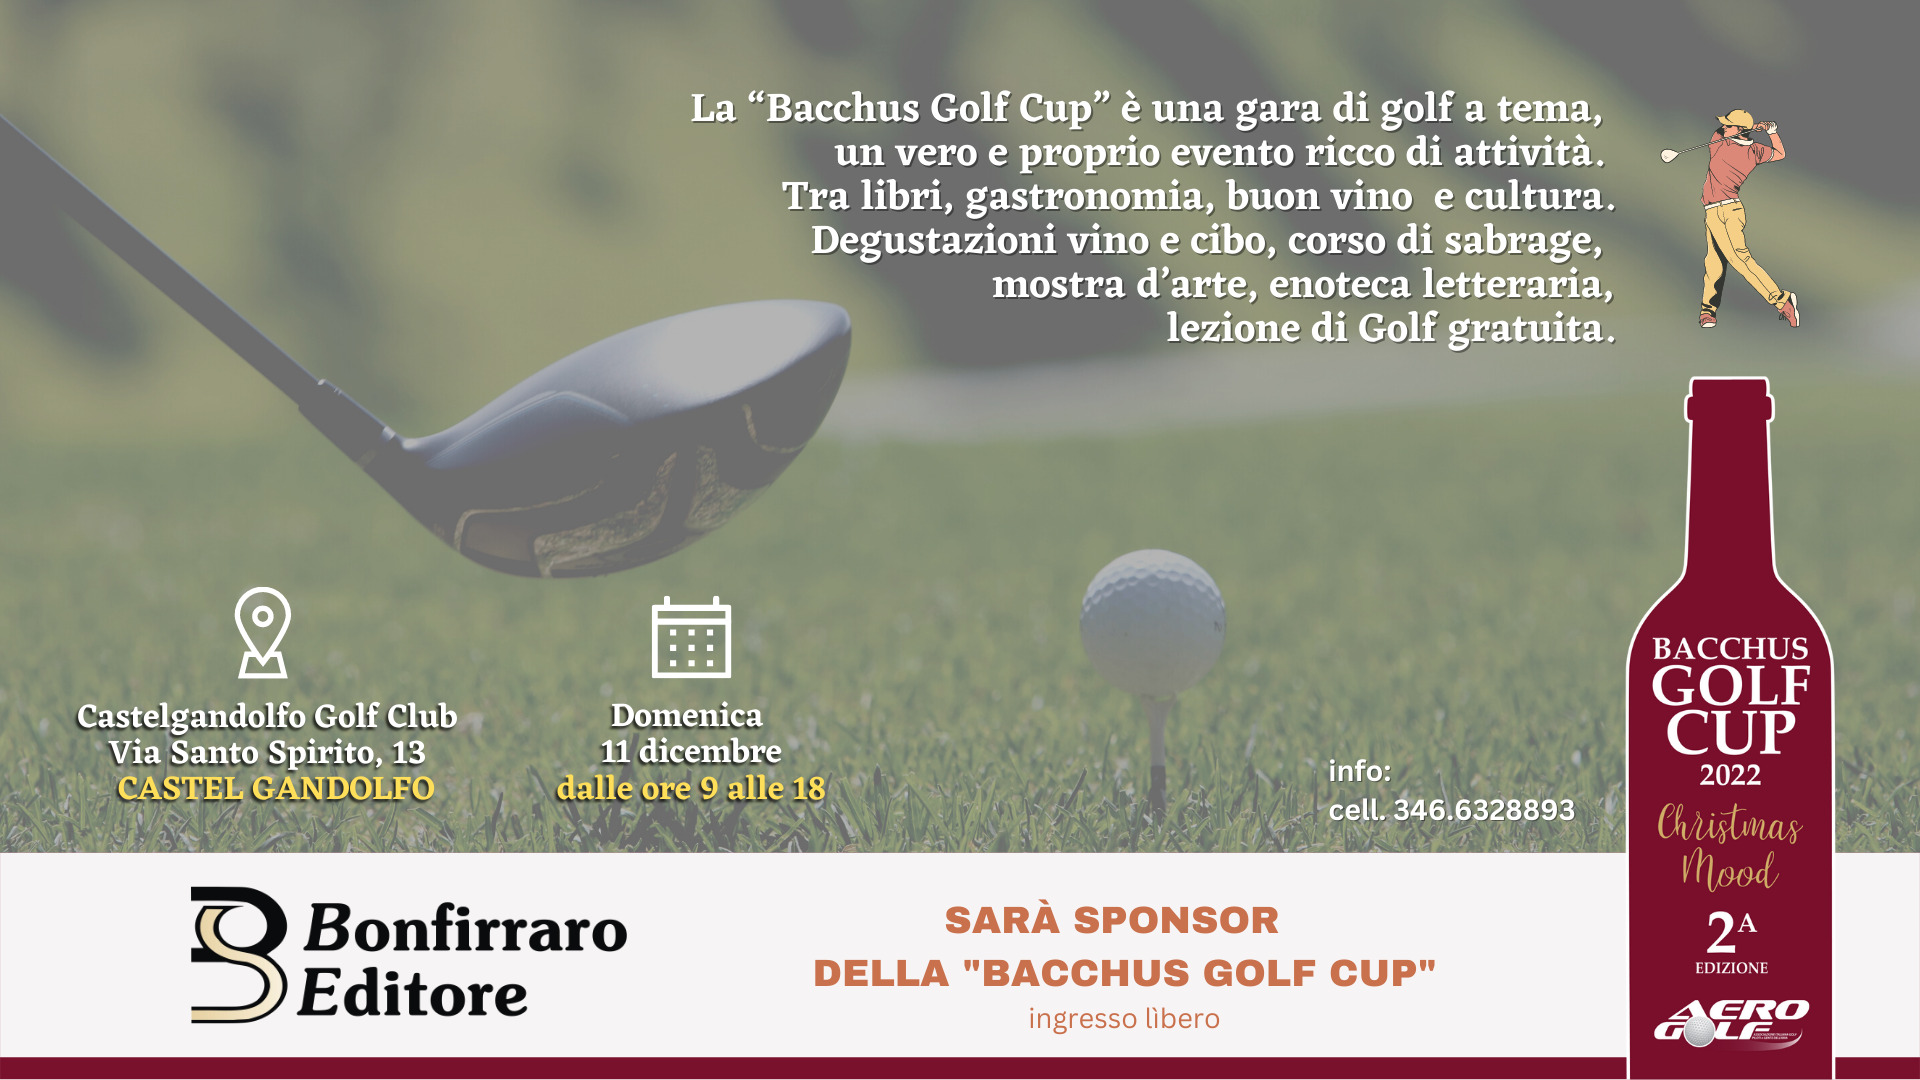 Un colpo tra i libri: Bonfirraro Editore è sponsor della Bacchus Golf Cup 2022